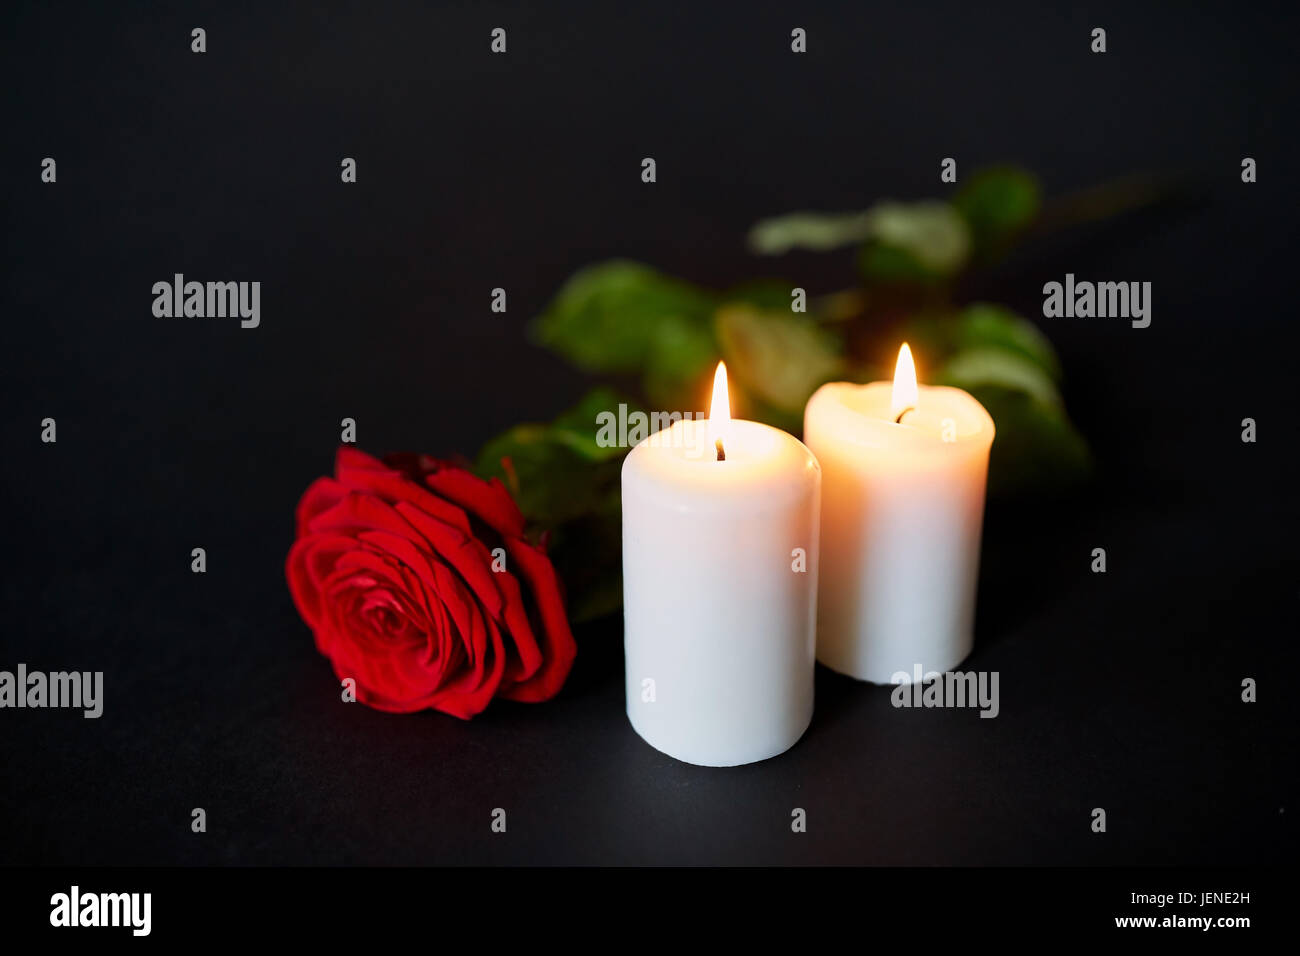 Red rose e candele accese su sfondo nero Foto Stock